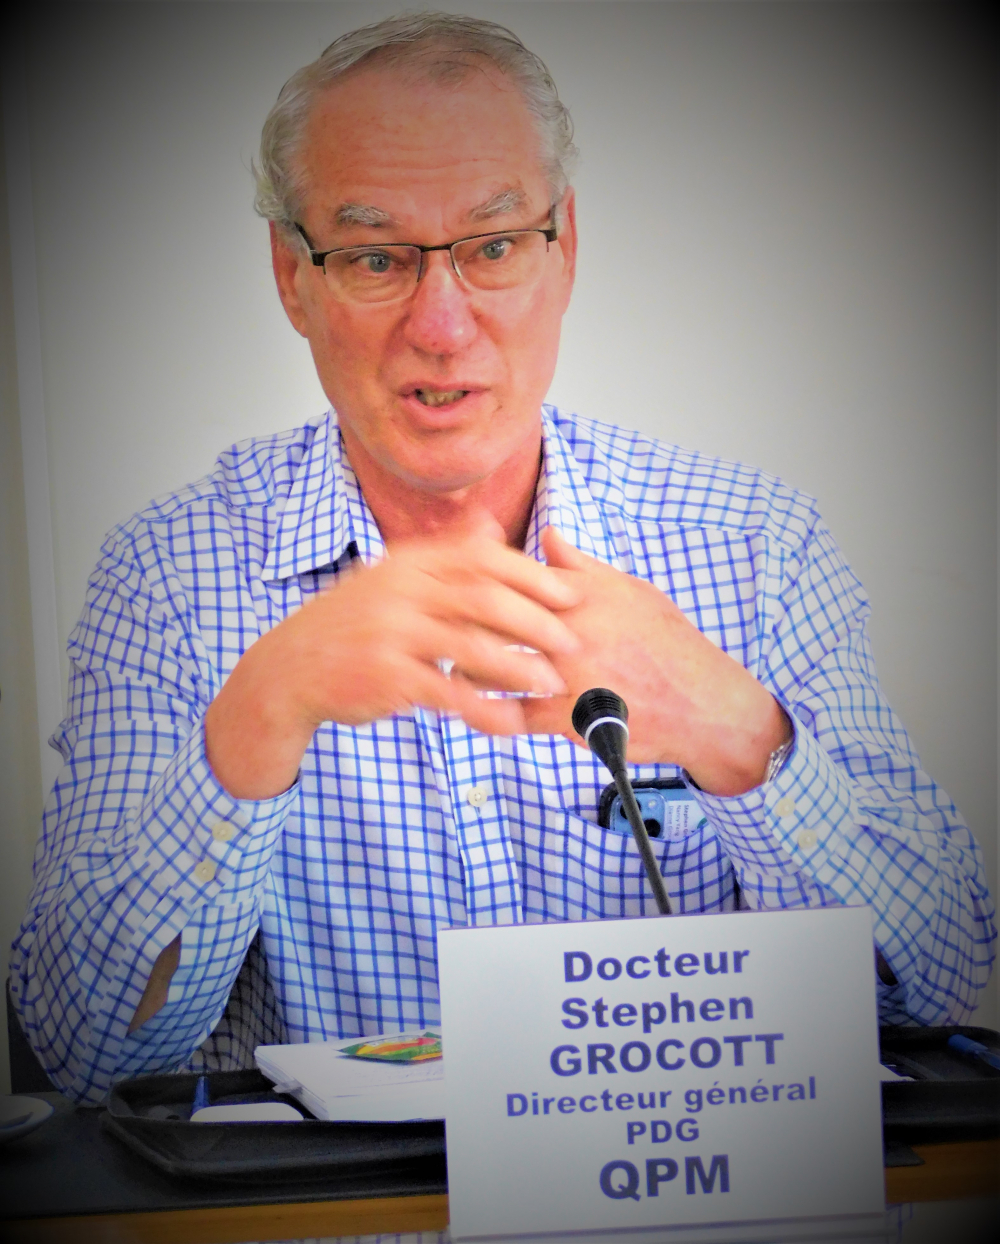 Docteur Stephen GROCOTT, directeur général et PDG de Queensland Pacific Metals (QPM).